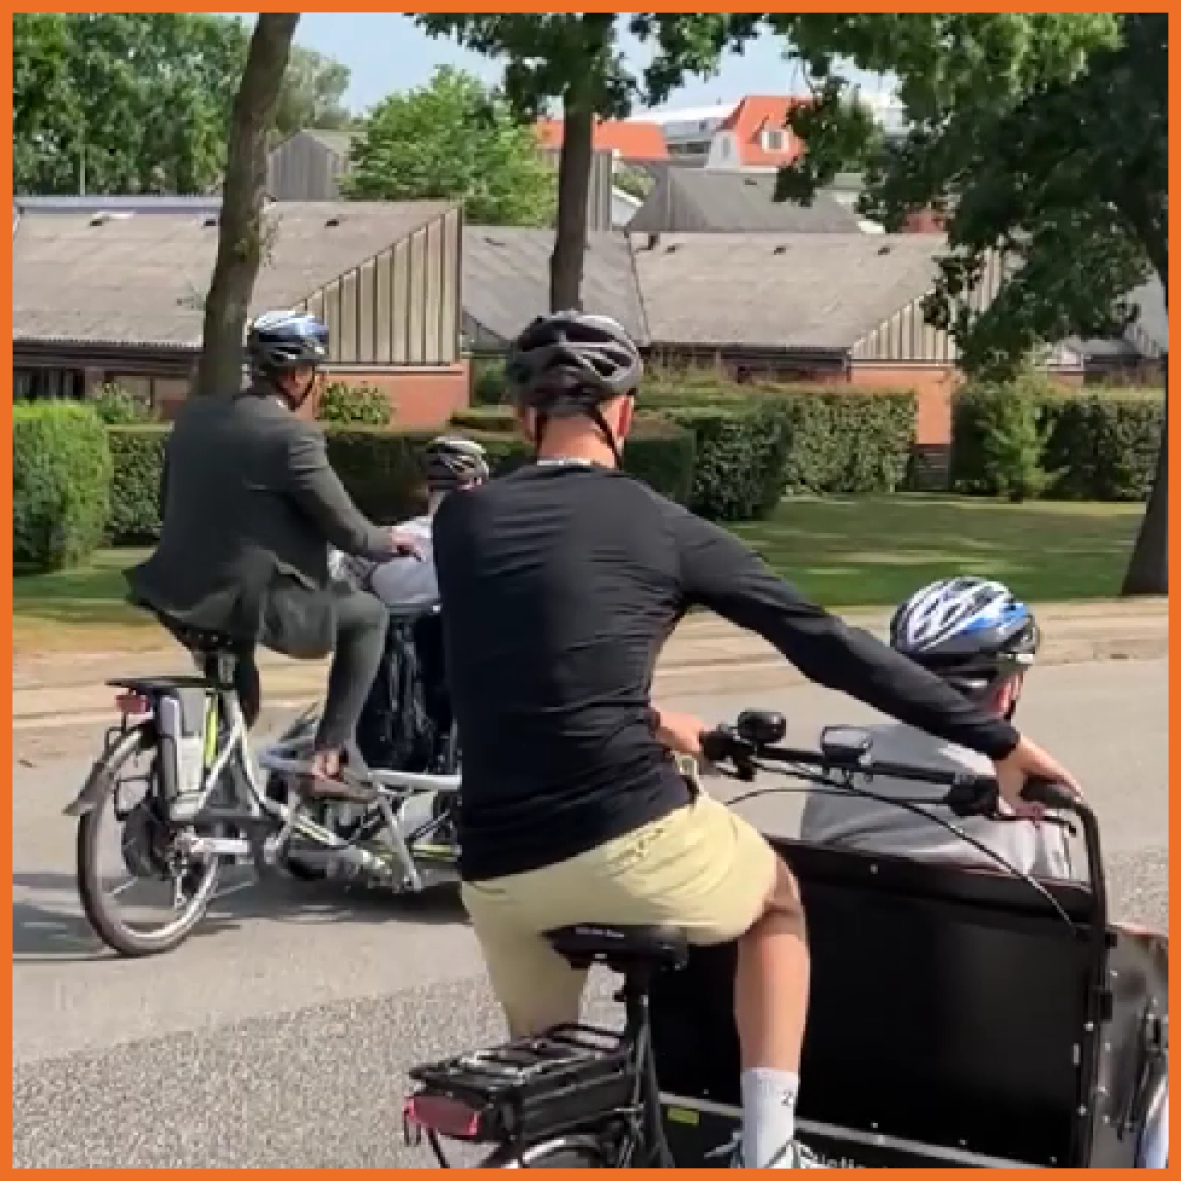 Billede af to mænd der cykler med to personer i en ladcykel.